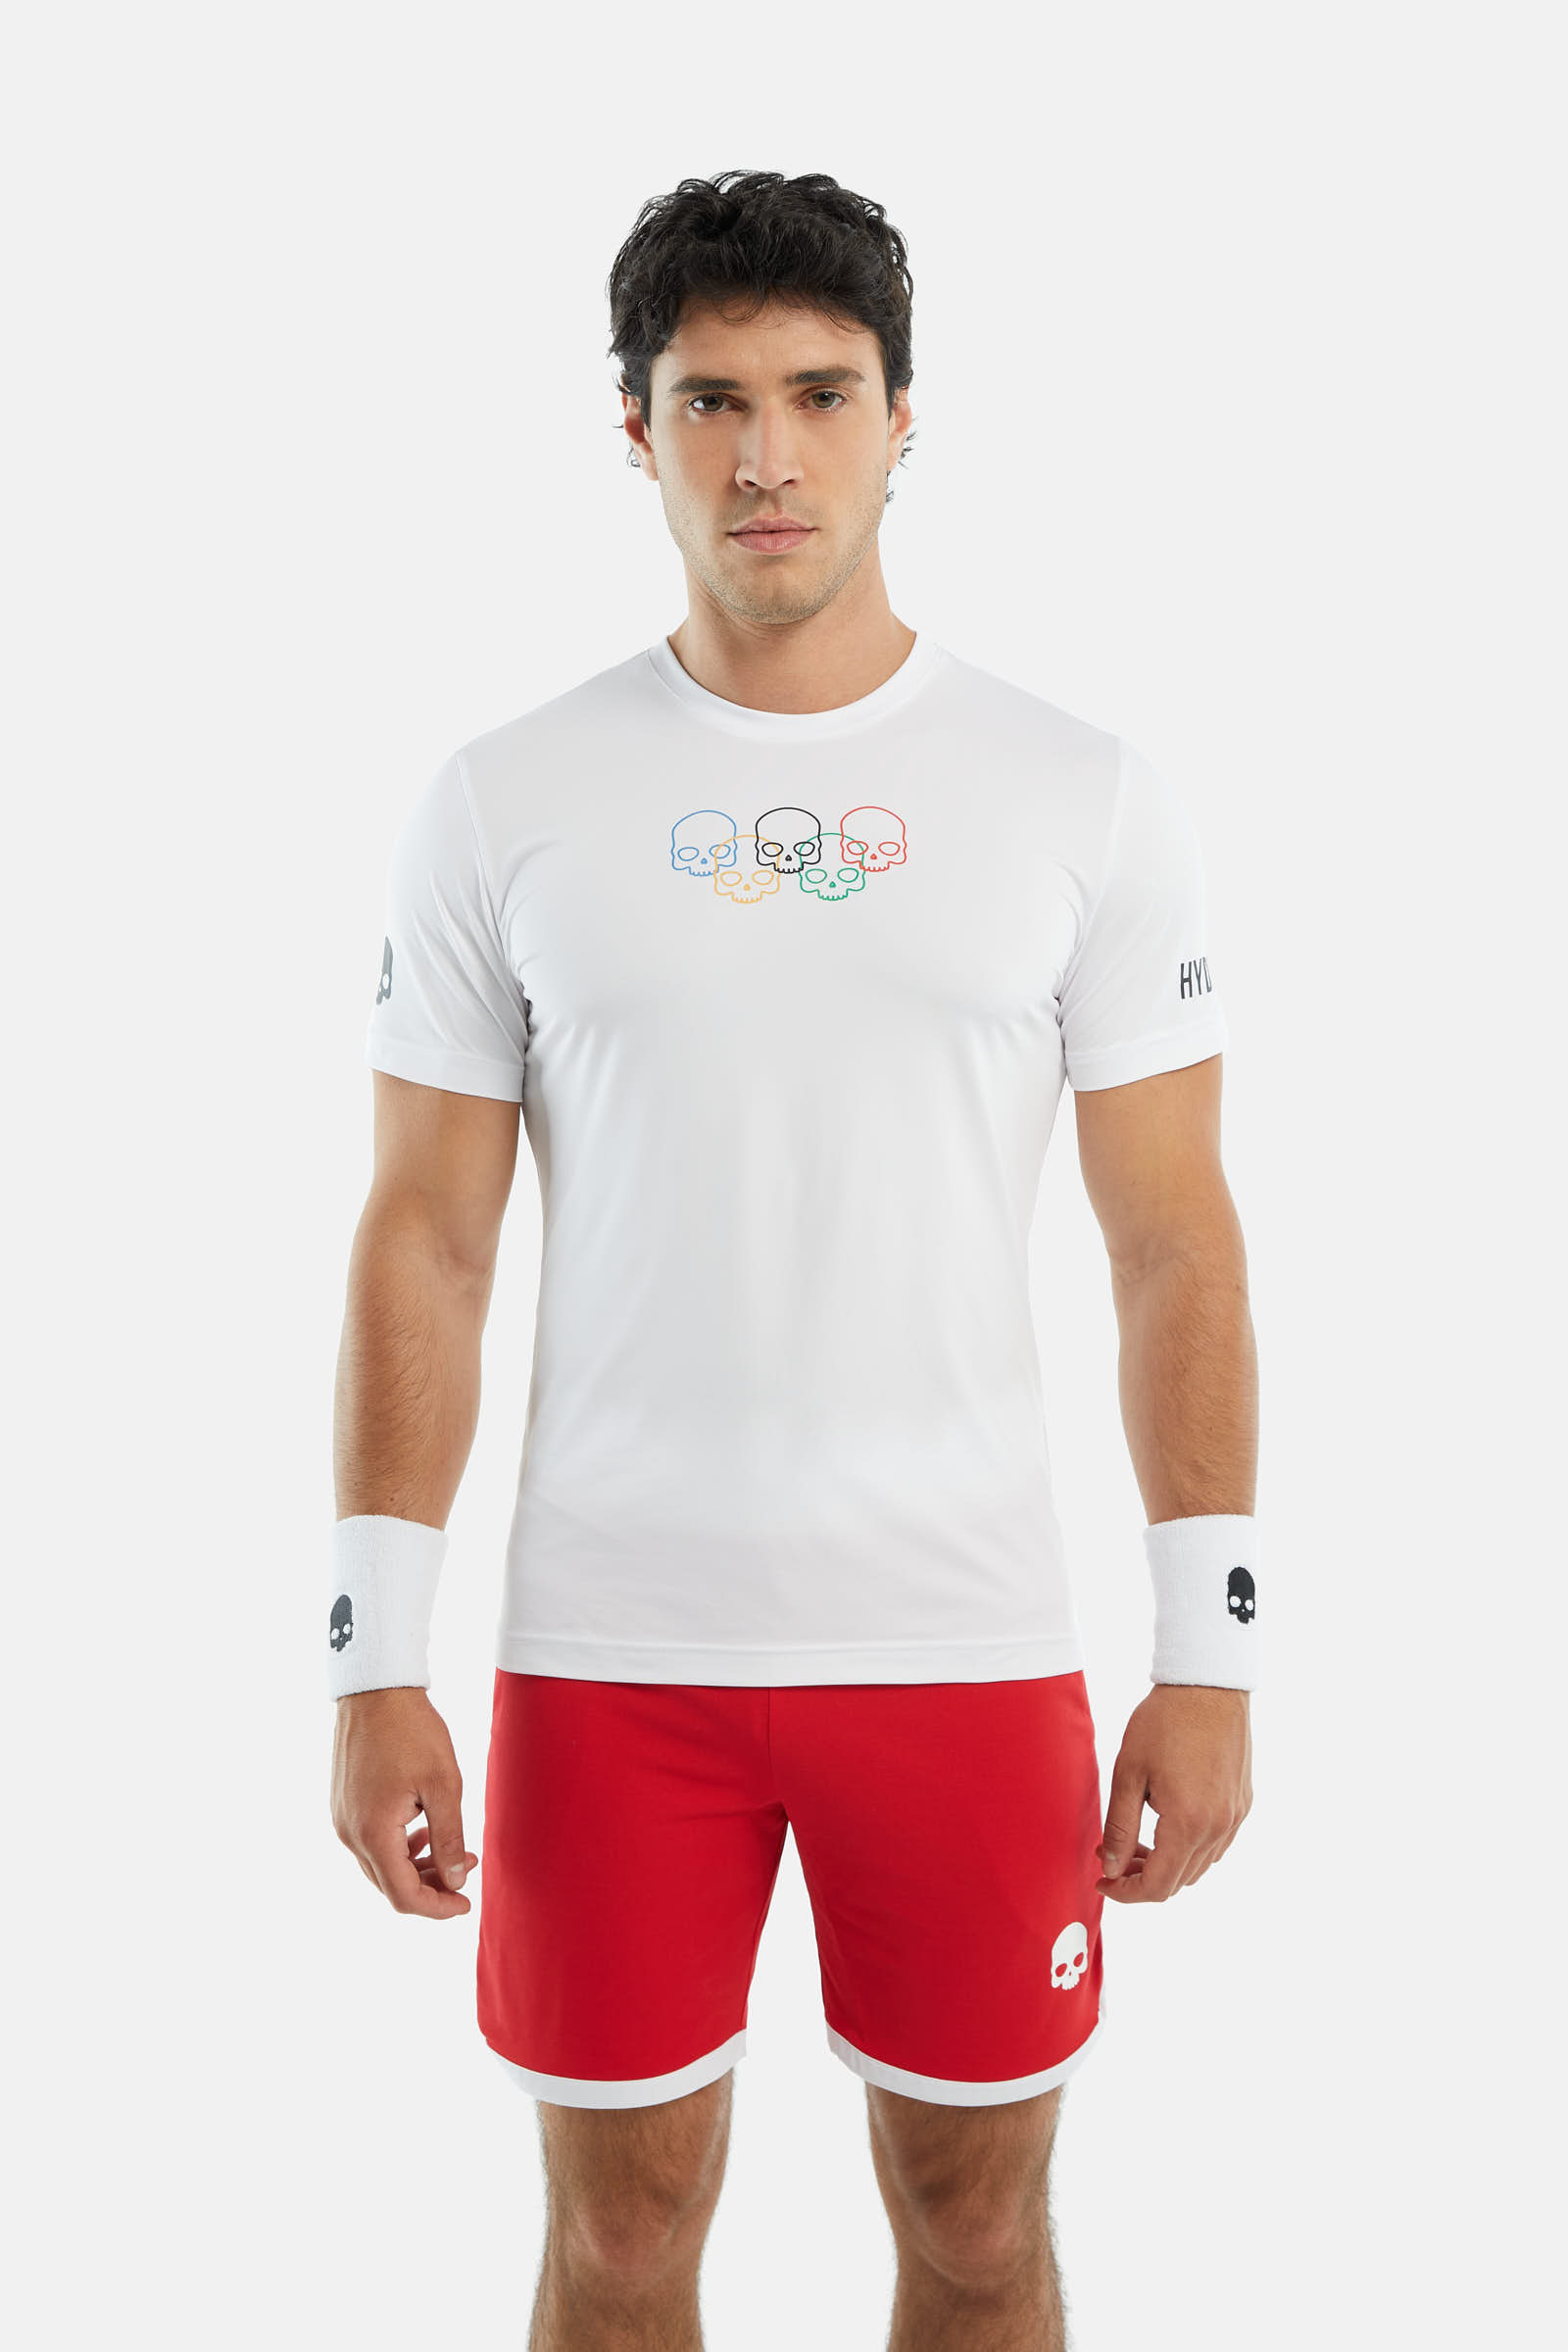 T-SHIRT TECNICA TESCHIO OLIMPICO - Abbigliamento - Abbigliamento sportivo | Hydrogen